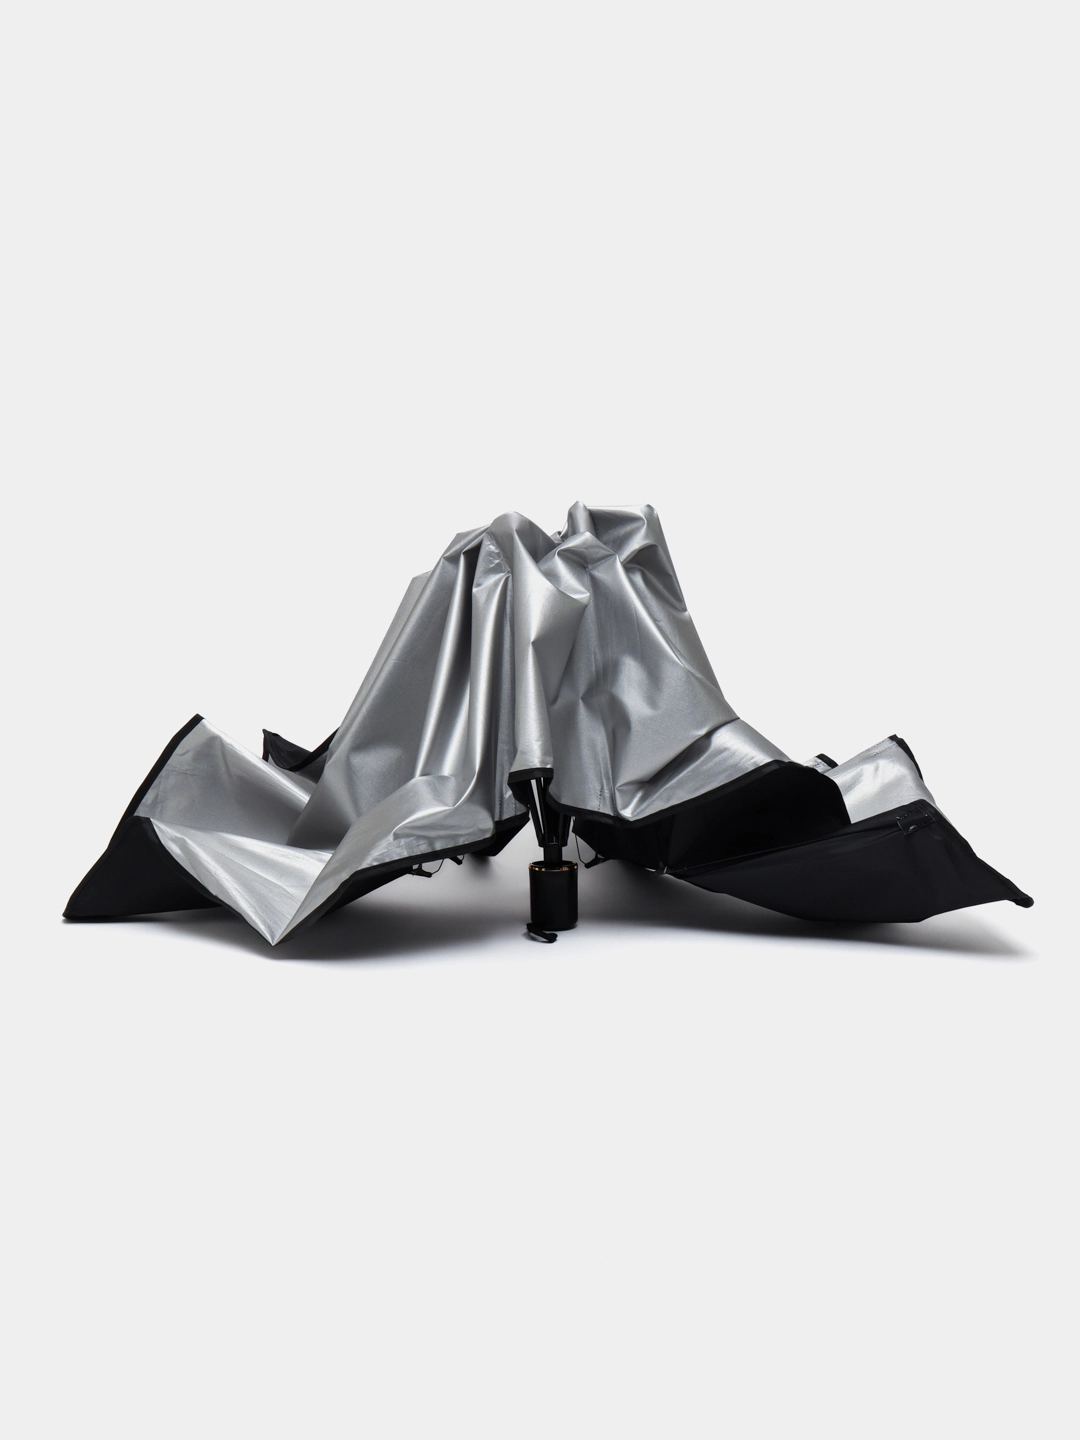 Солнцезащитный зонт шторка для лобового стекла автомобиля (140X65см) недорого